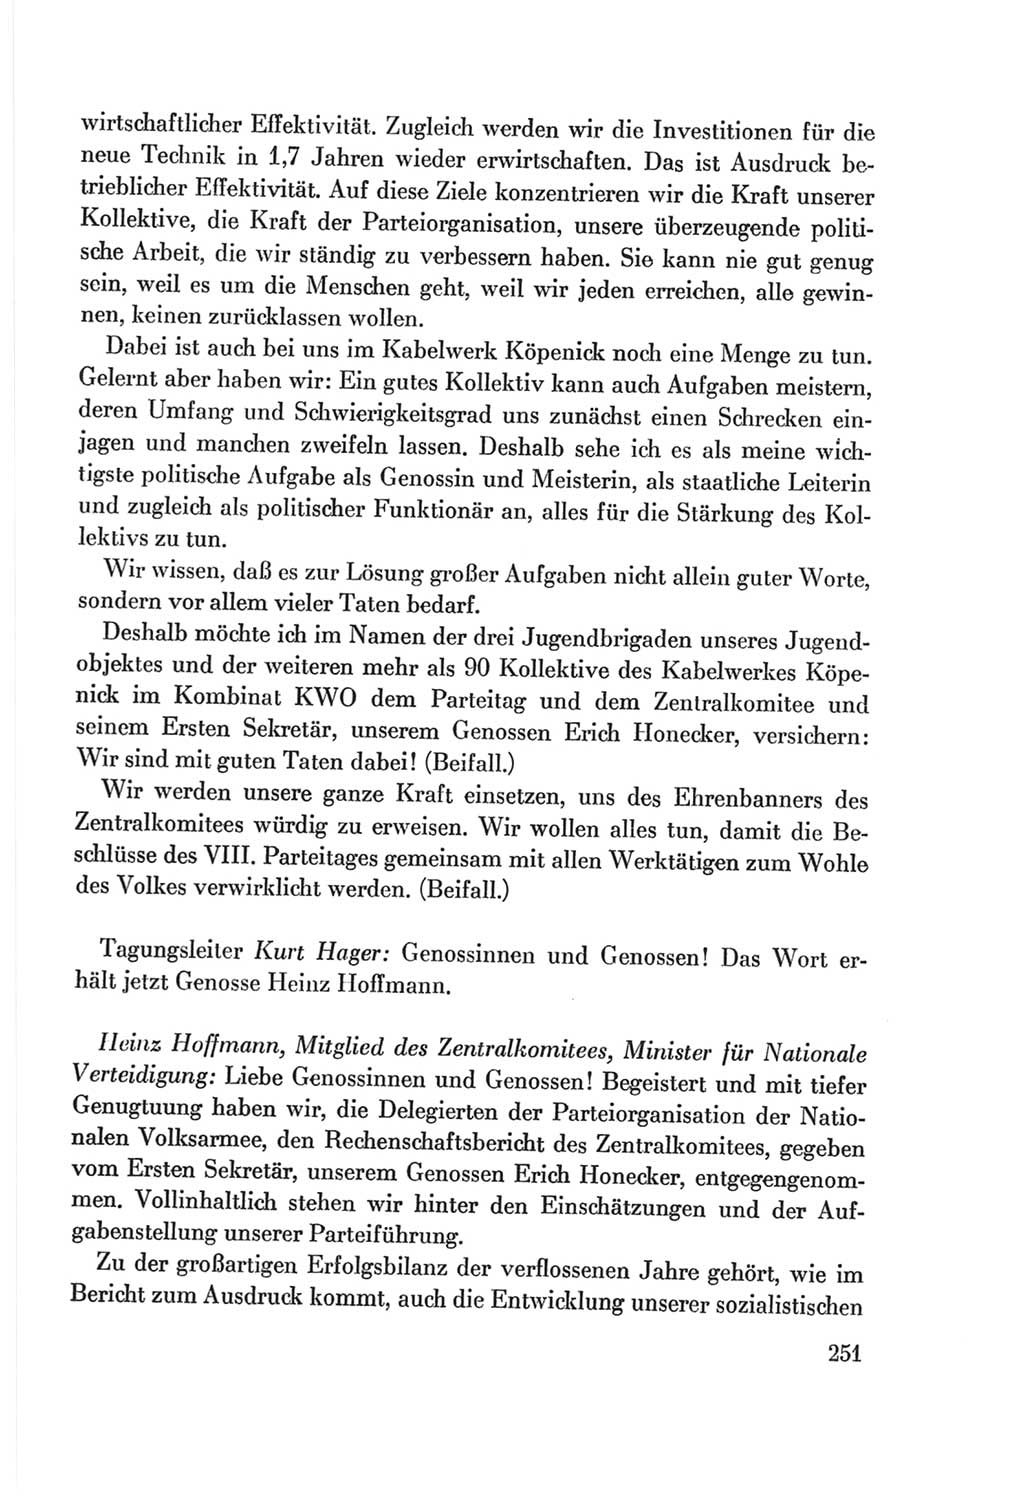 Protokoll der Verhandlungen des Ⅷ. Parteitages der Sozialistischen Einheitspartei Deutschlands (SED) [Deutsche Demokratische Republik (DDR)] 1971, Band 1, Seite 251 (Prot. Verh. Ⅷ. PT SED DDR 1971, Bd. 1, S. 251)